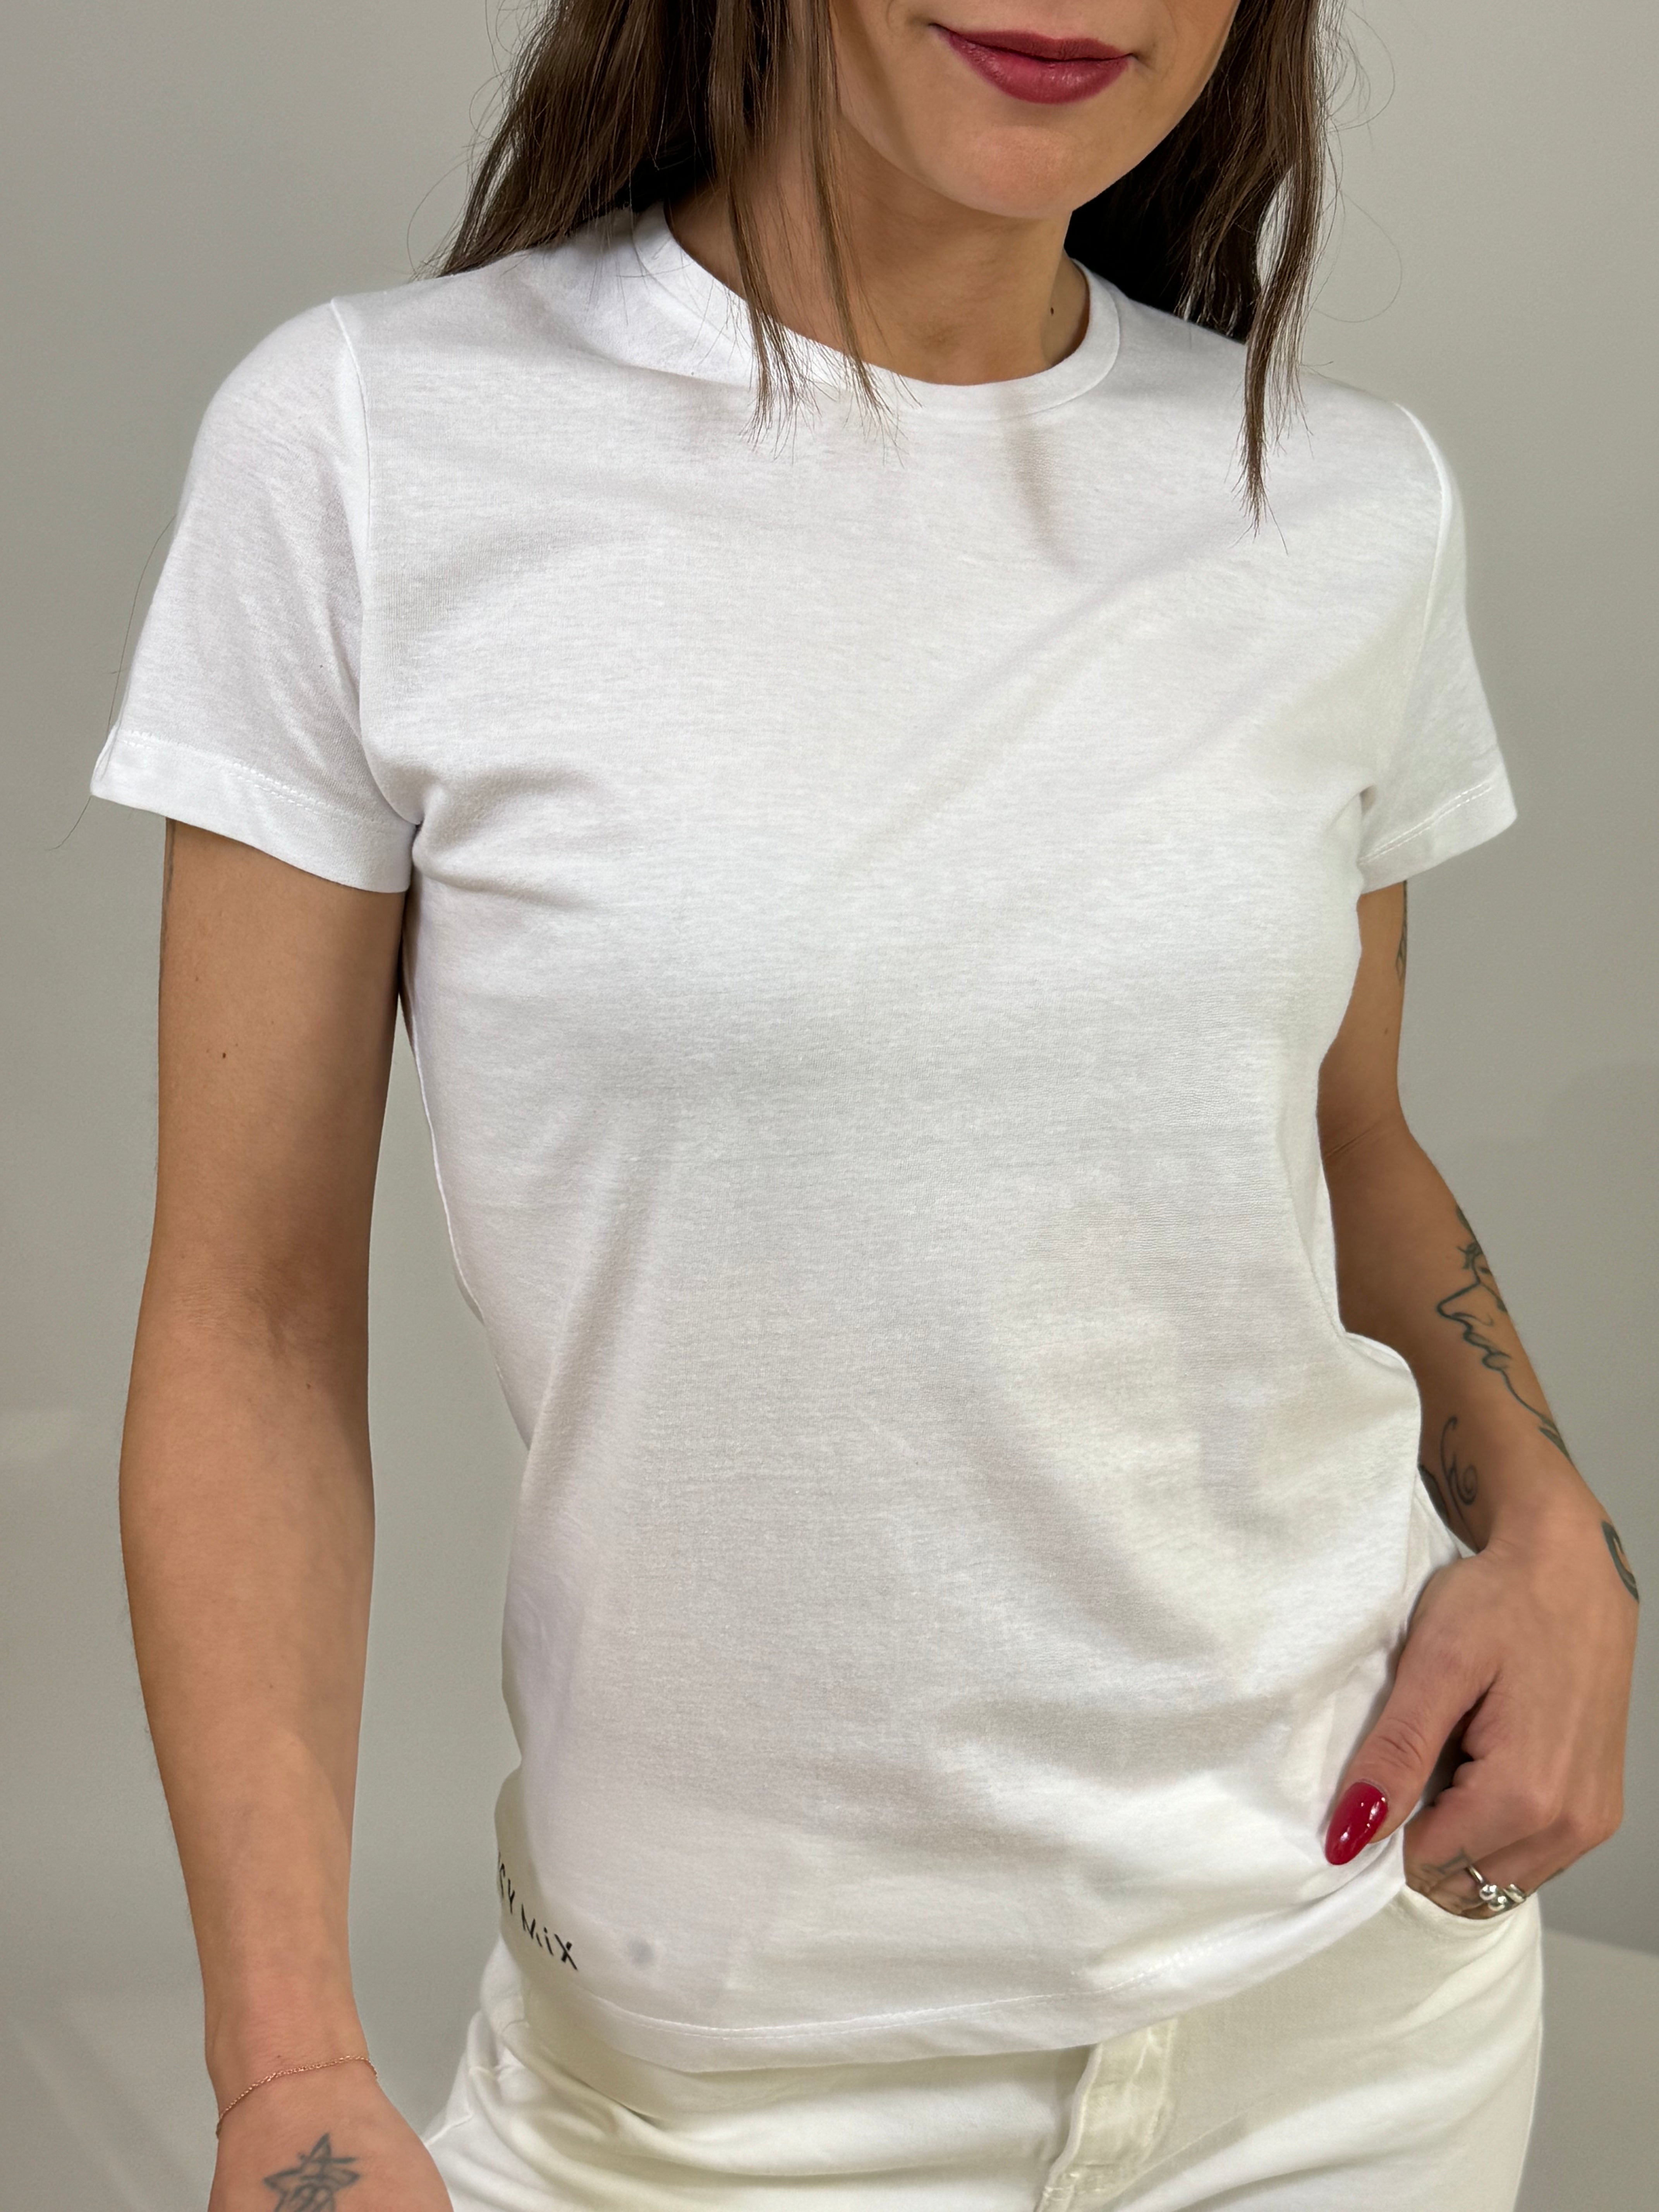 T-shirt in cotone Susy Mix SLIM GIROCOLLO CON LOGO